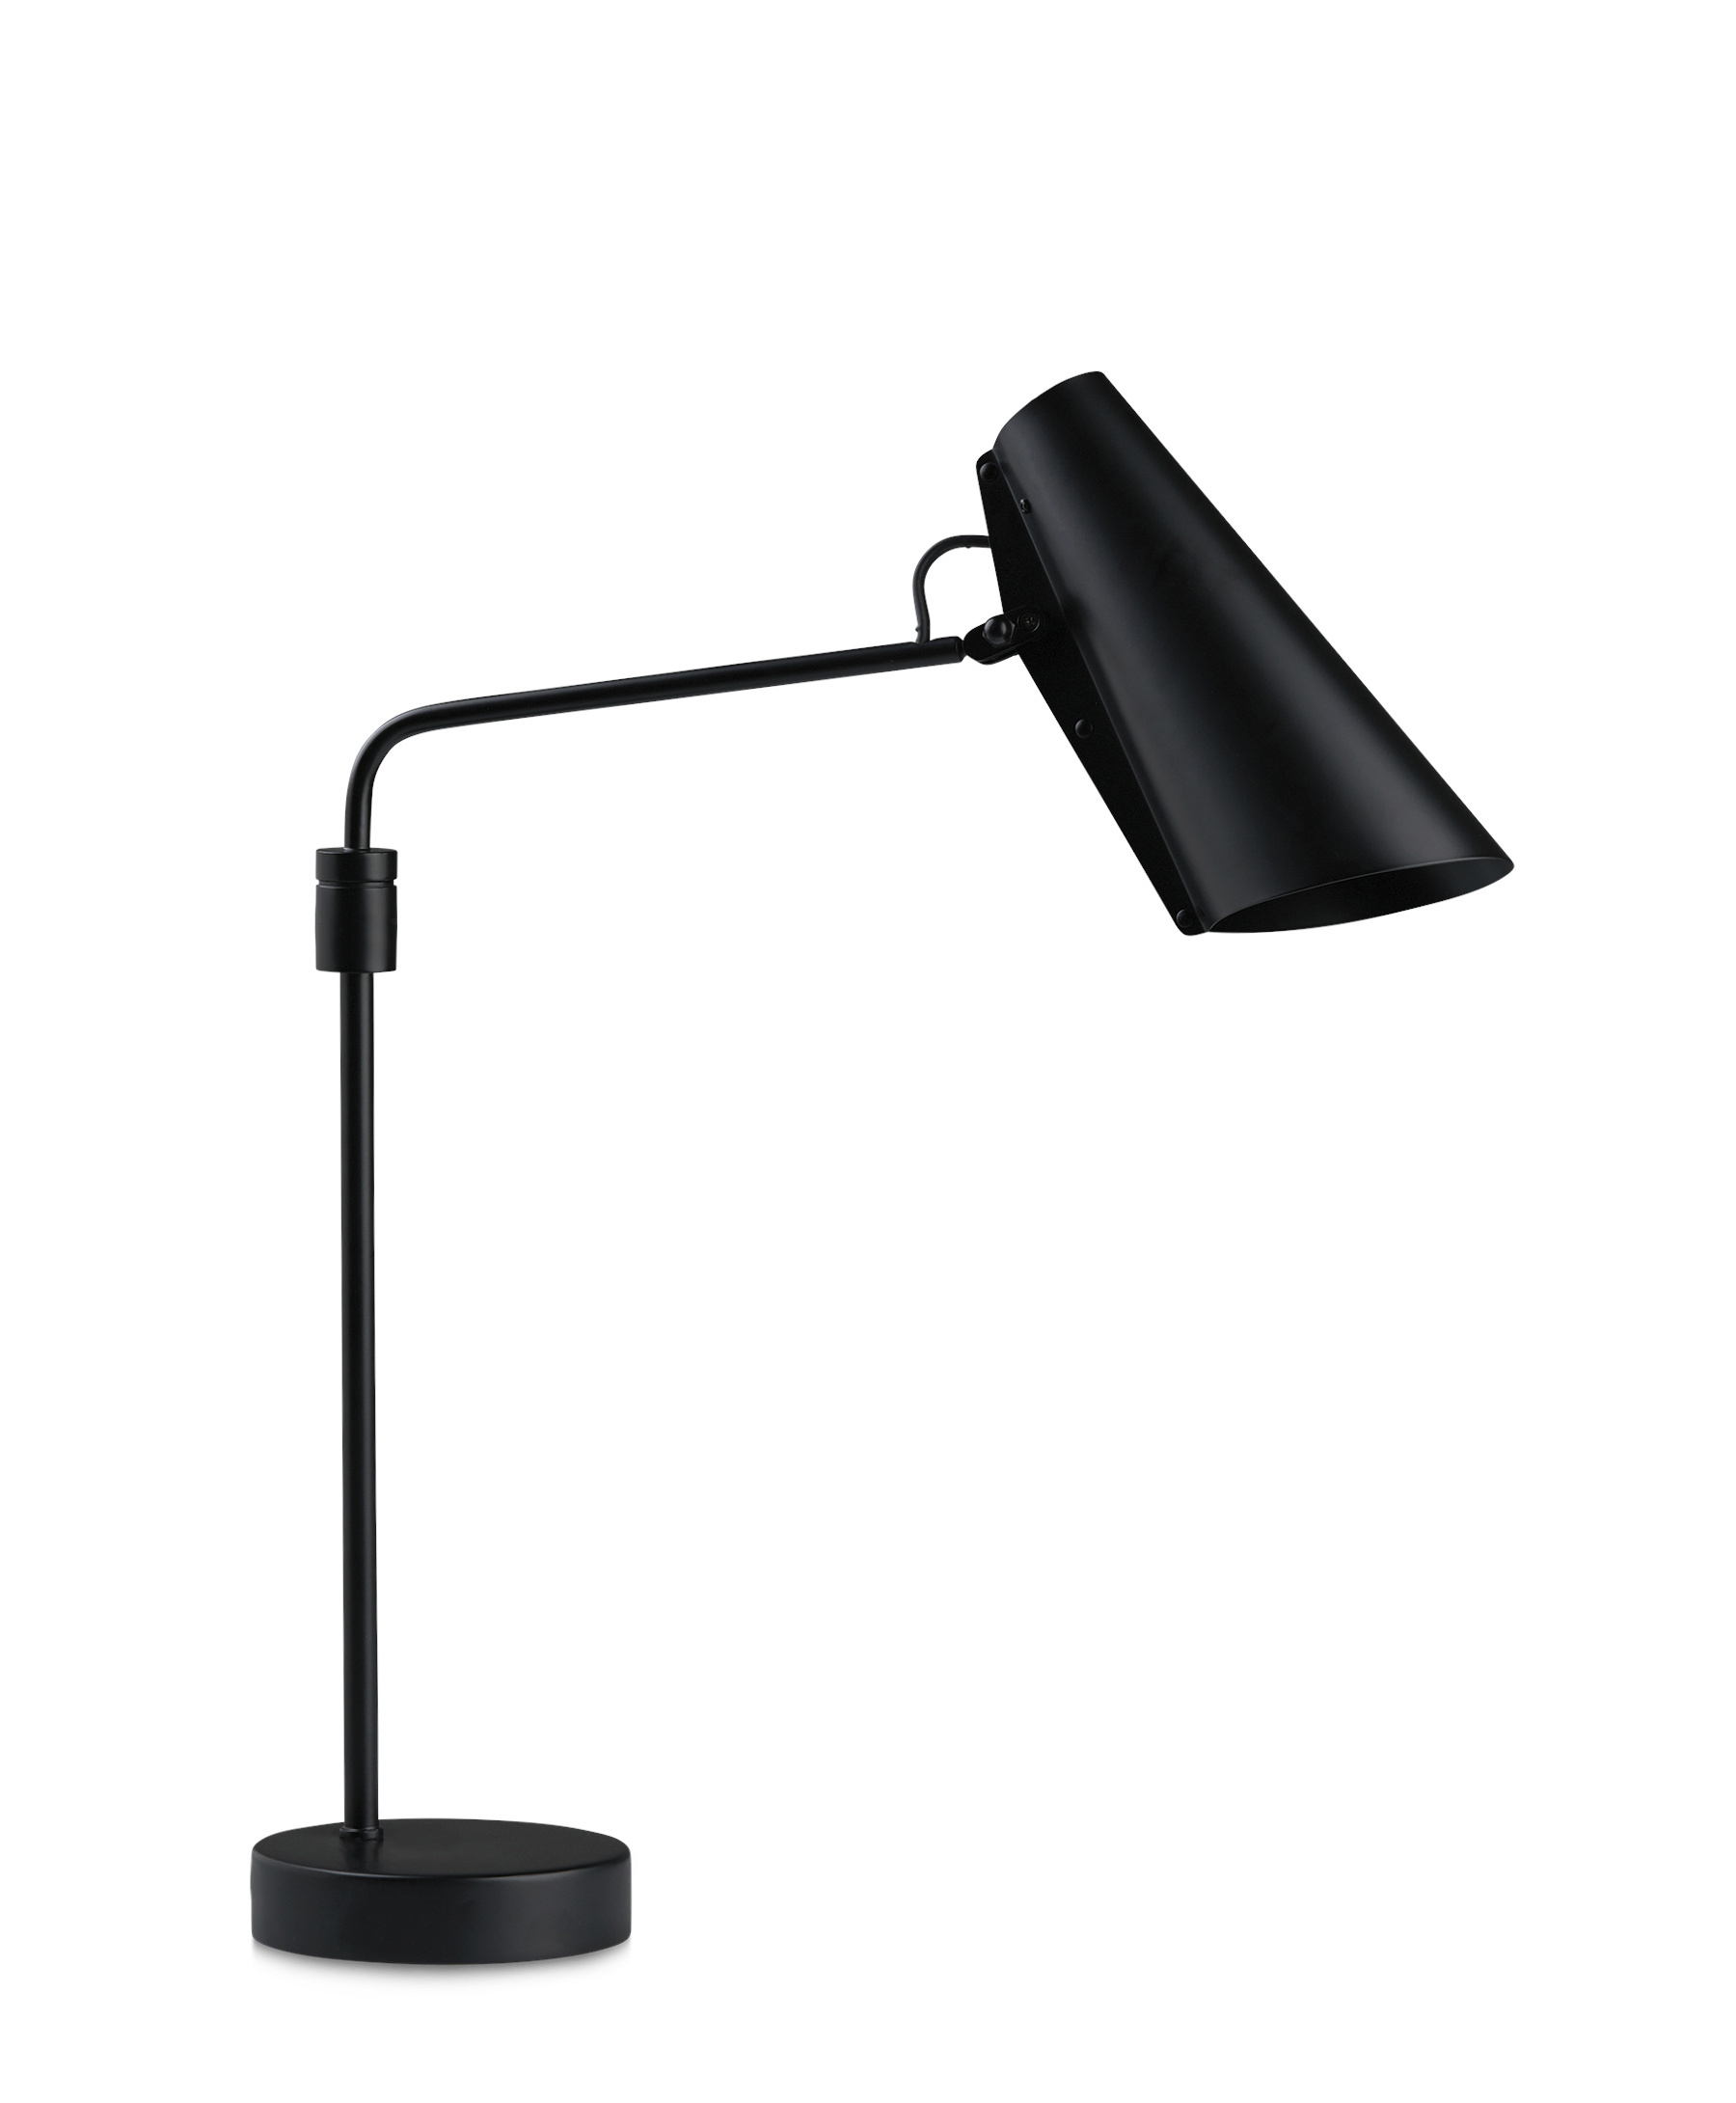 & Tischleuchten Smartambiente Design kaufen Tischlampen online |